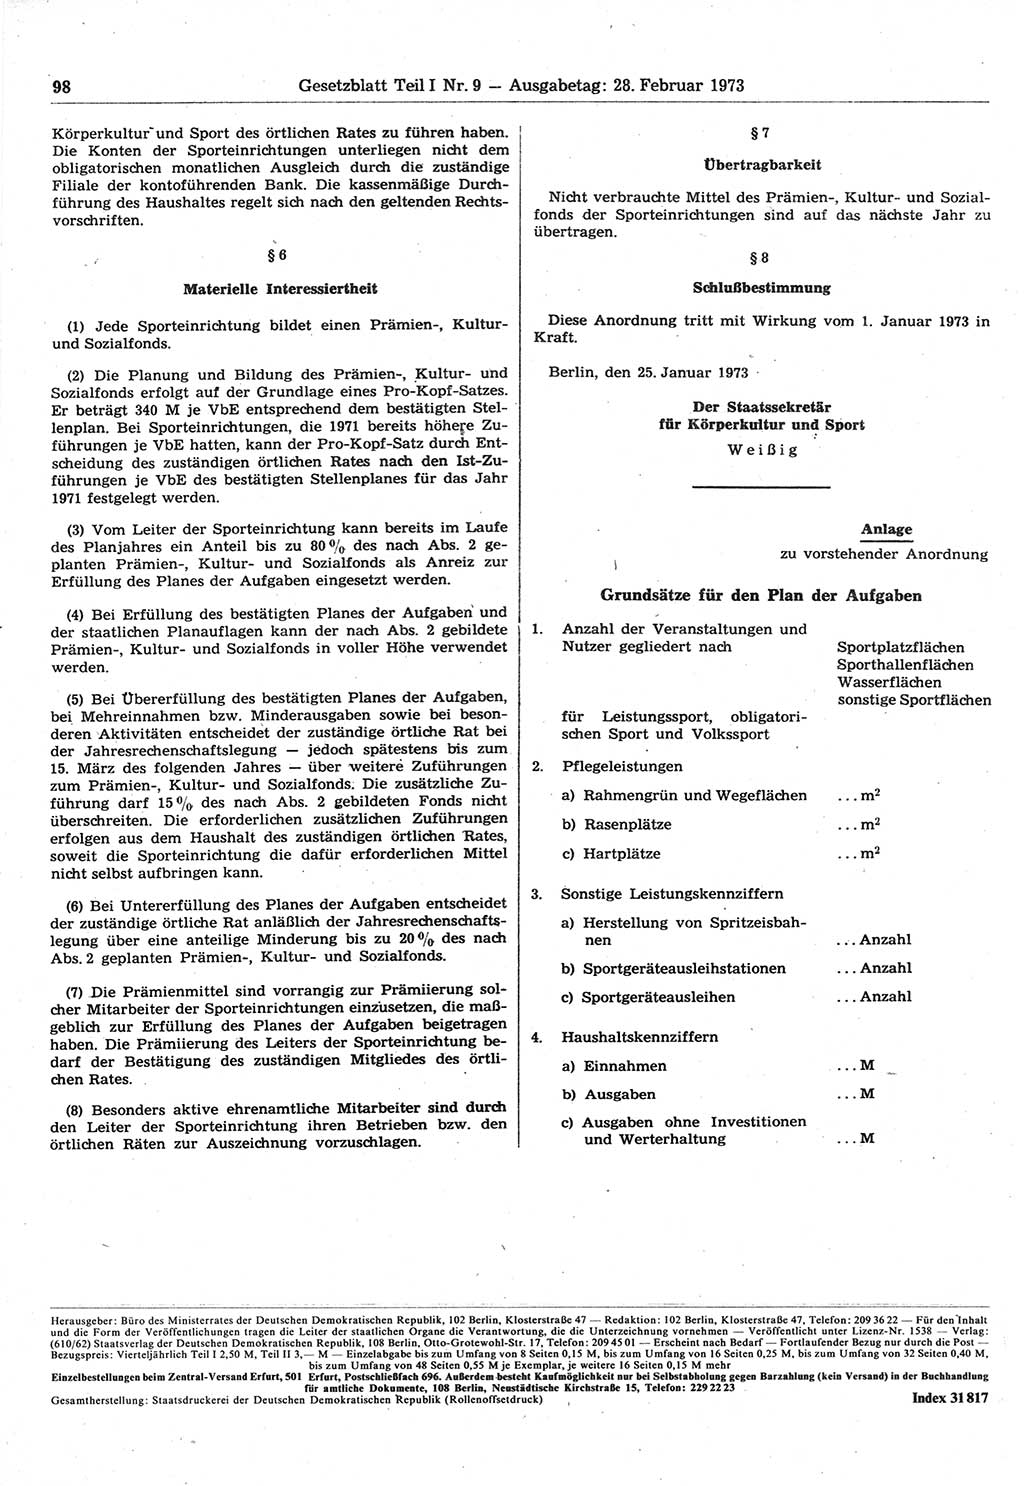 Gesetzblatt (GBl.) der Deutschen Demokratischen Republik (DDR) Teil Ⅰ 1973, Seite 98 (GBl. DDR Ⅰ 1973, S. 98)